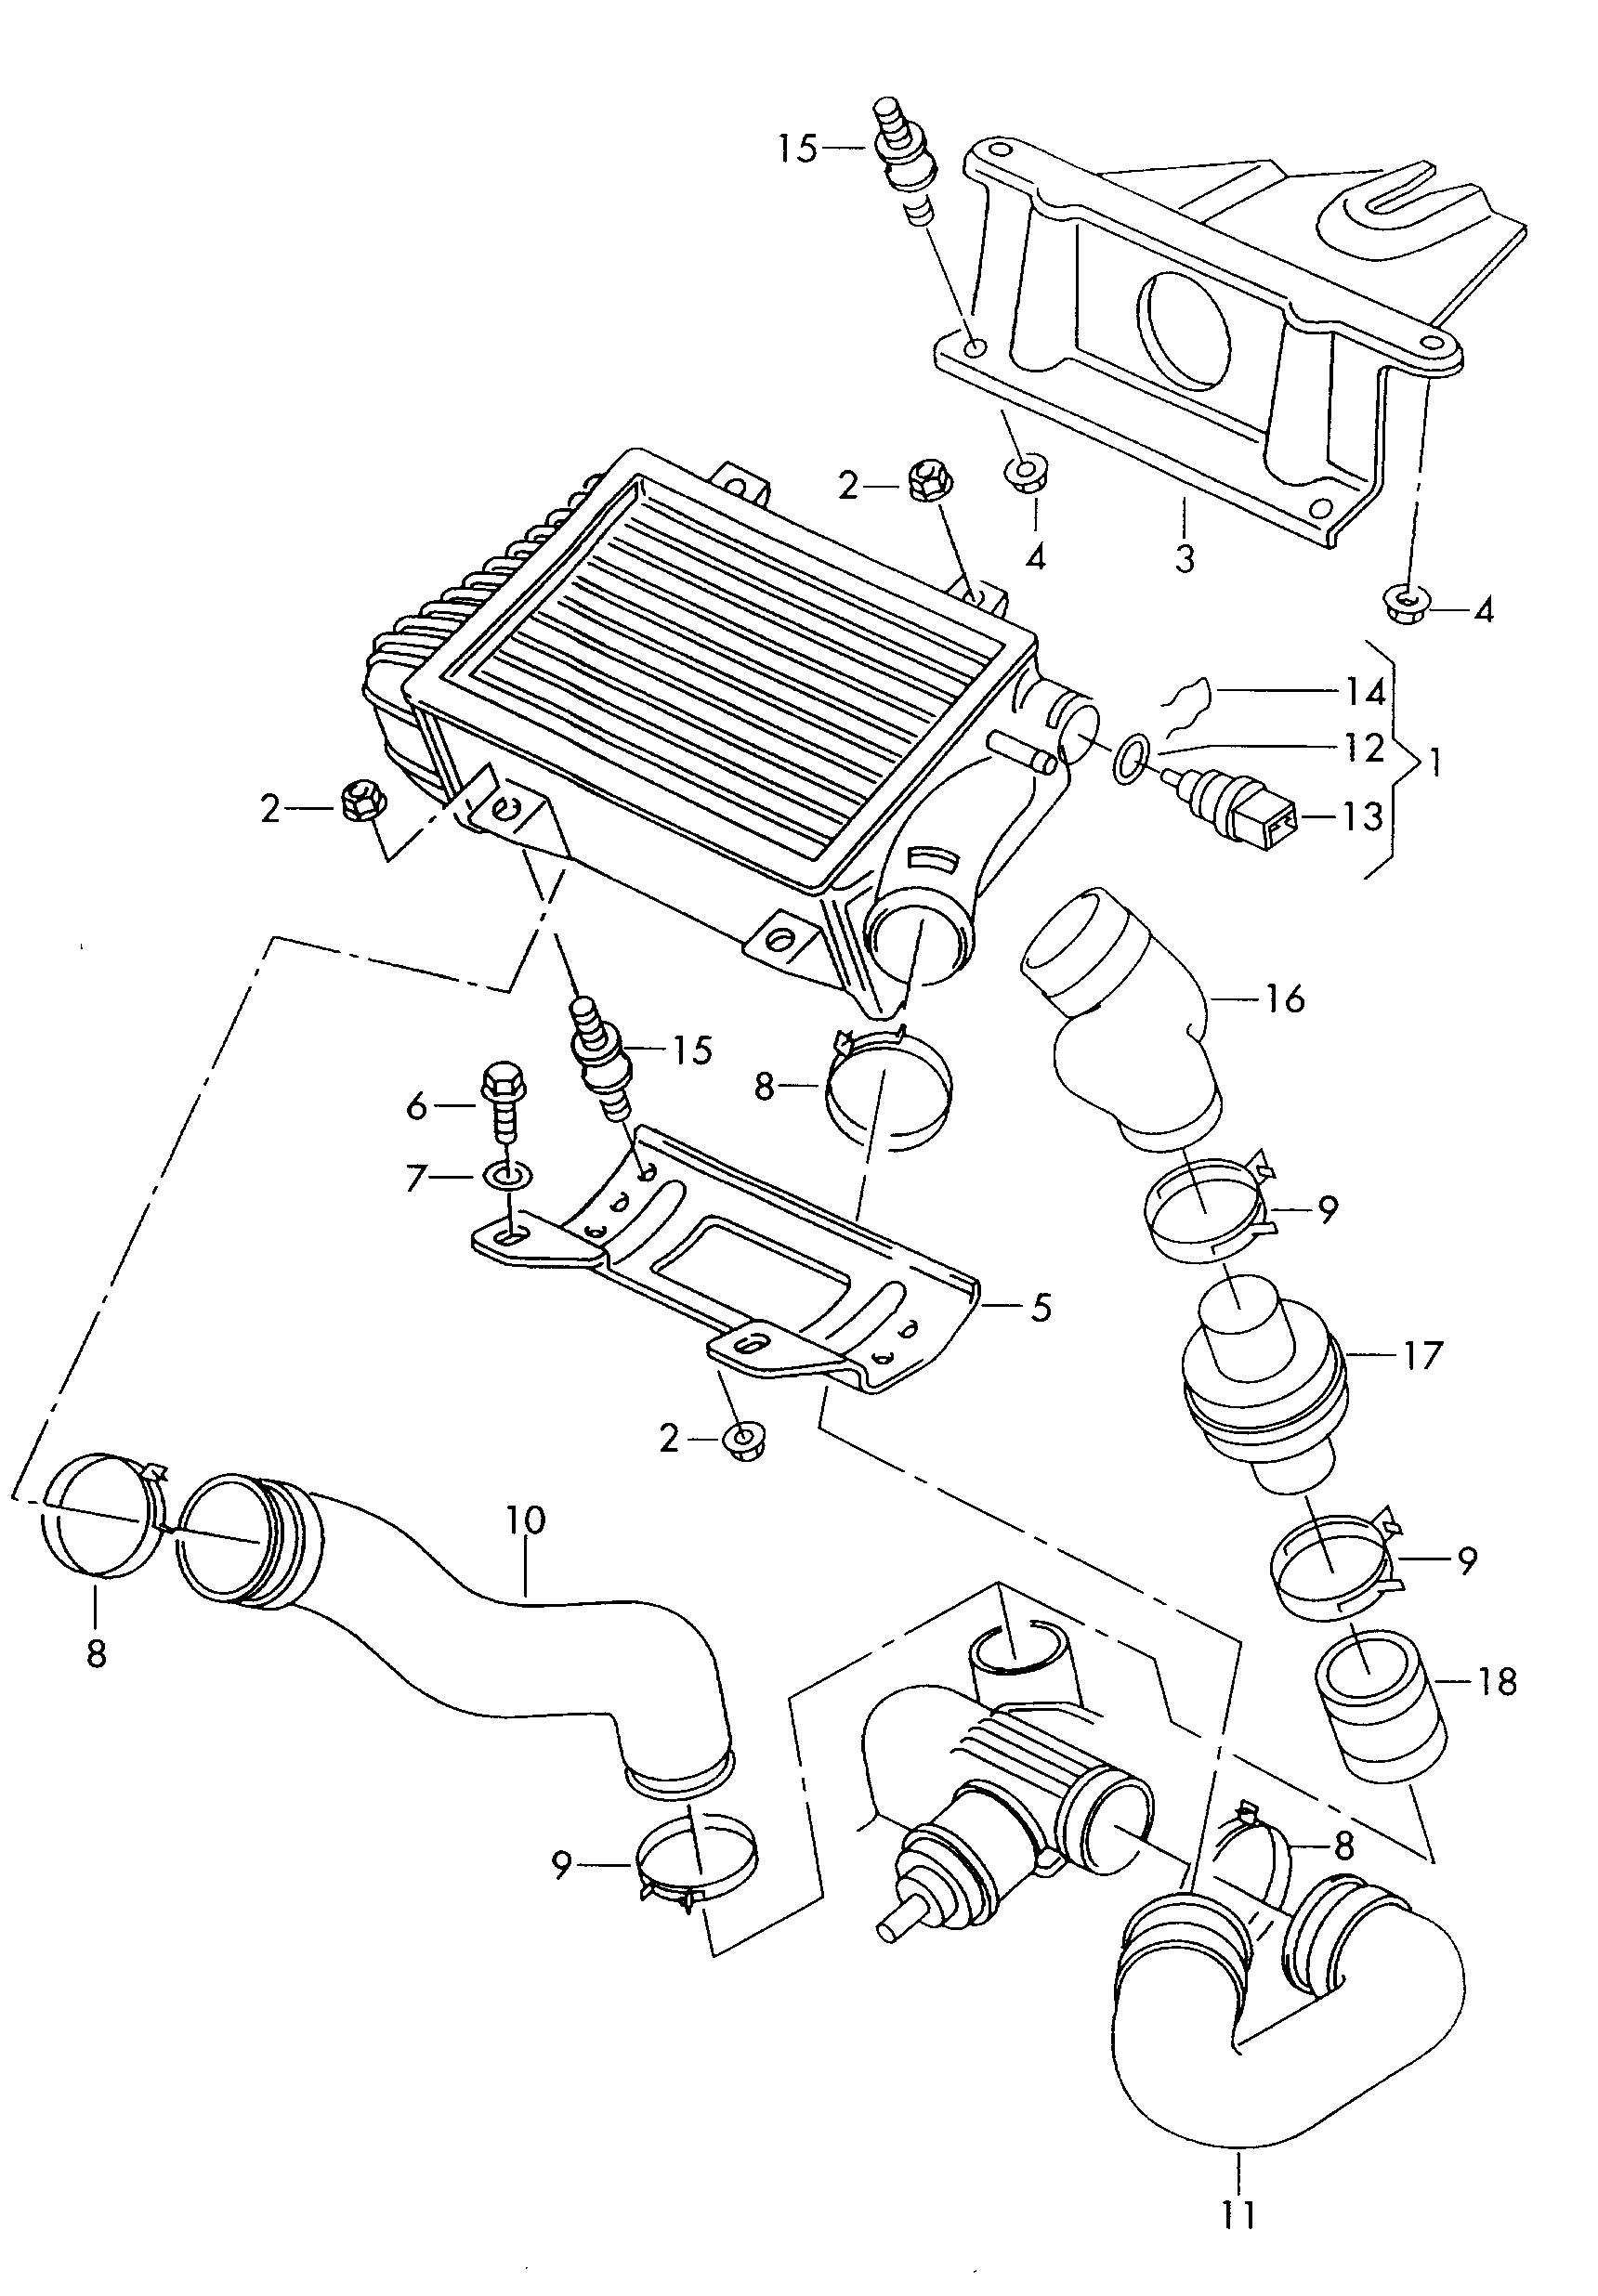 intercooler 2,5l - Transporter - tr